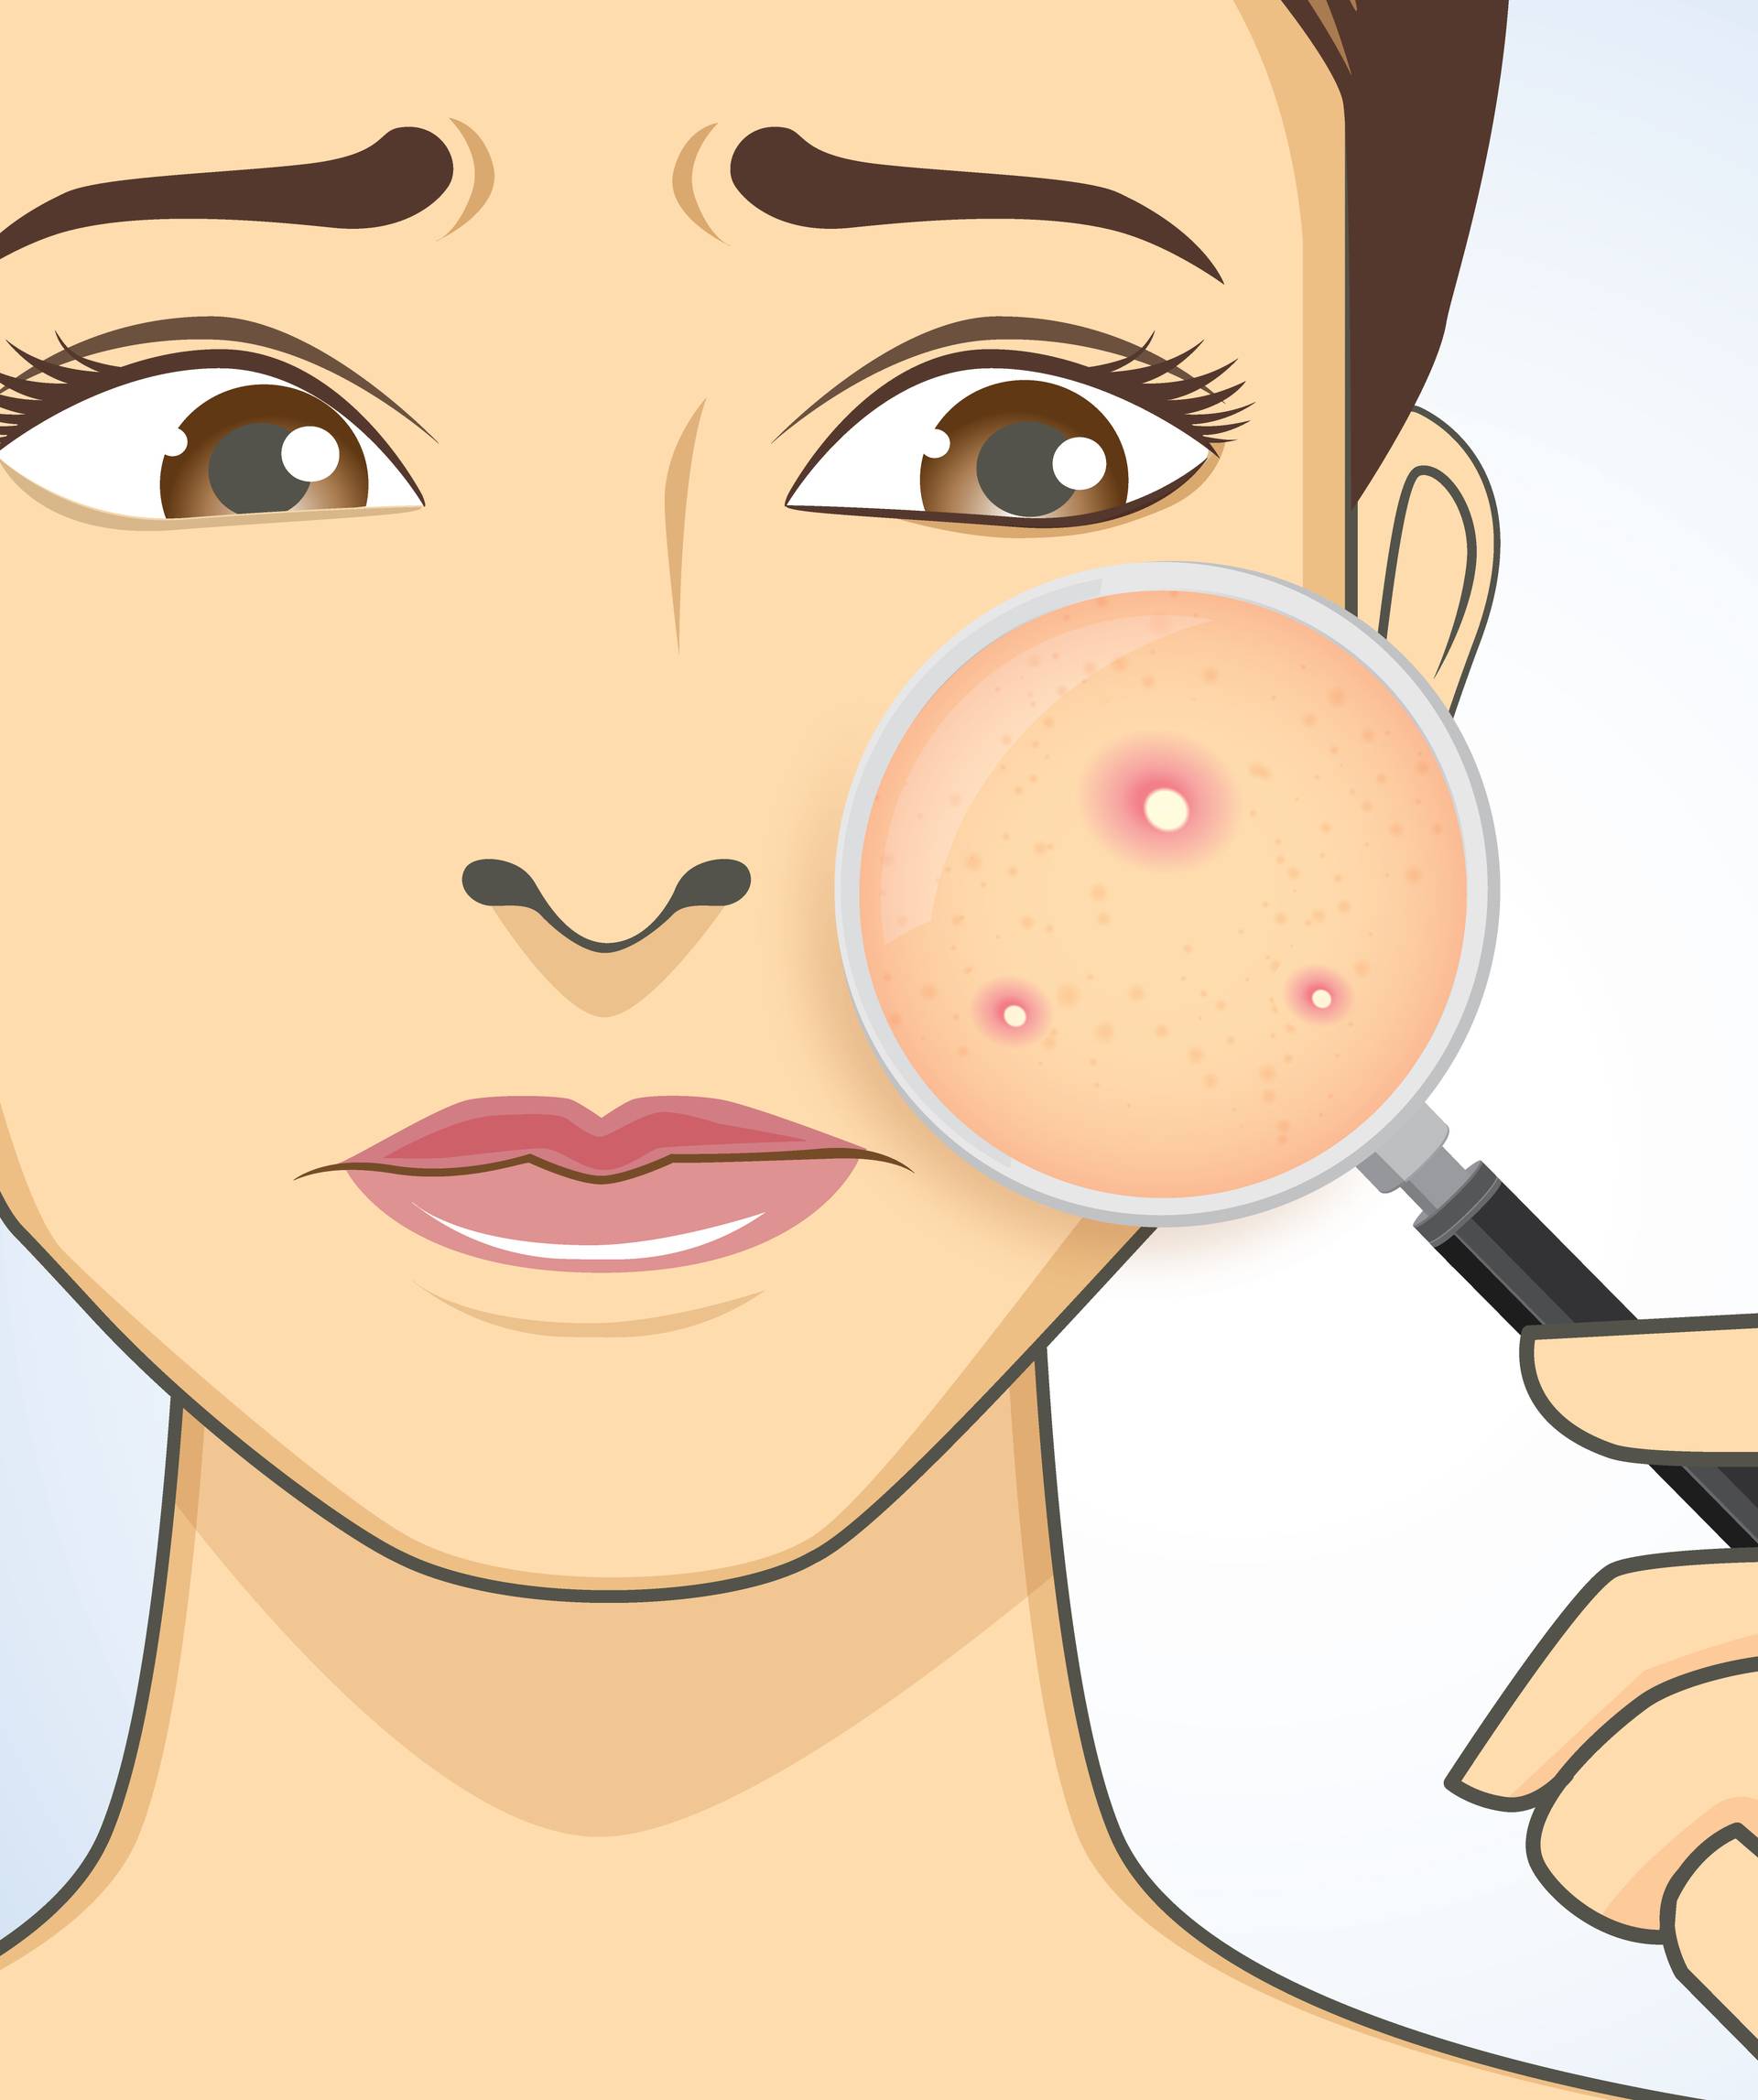 Akne - njihovo mjesto na licu otkriva vaše unutarnje tegobe